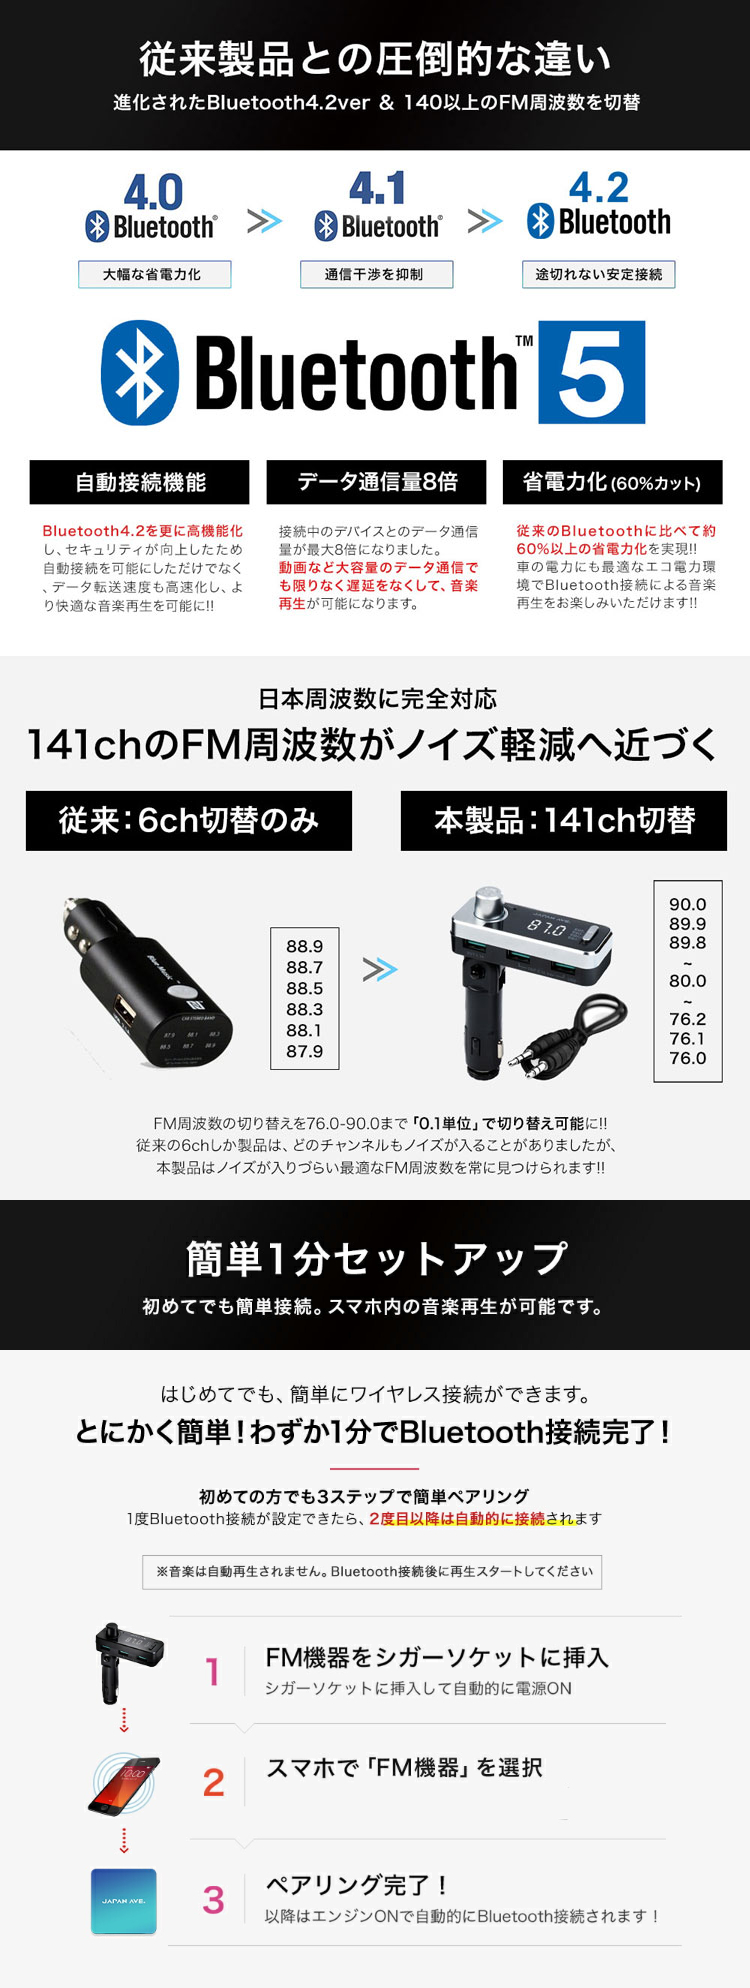 有線接続 AUX-IN対応 FMトランスミッター Bluetooth 5.0 高音質 無線 JAPAN AVE. ipod iphone 7 8 plus X usb メモリー トランスミッター 12v -24v対応 ブルトゥース ウォークマン対応